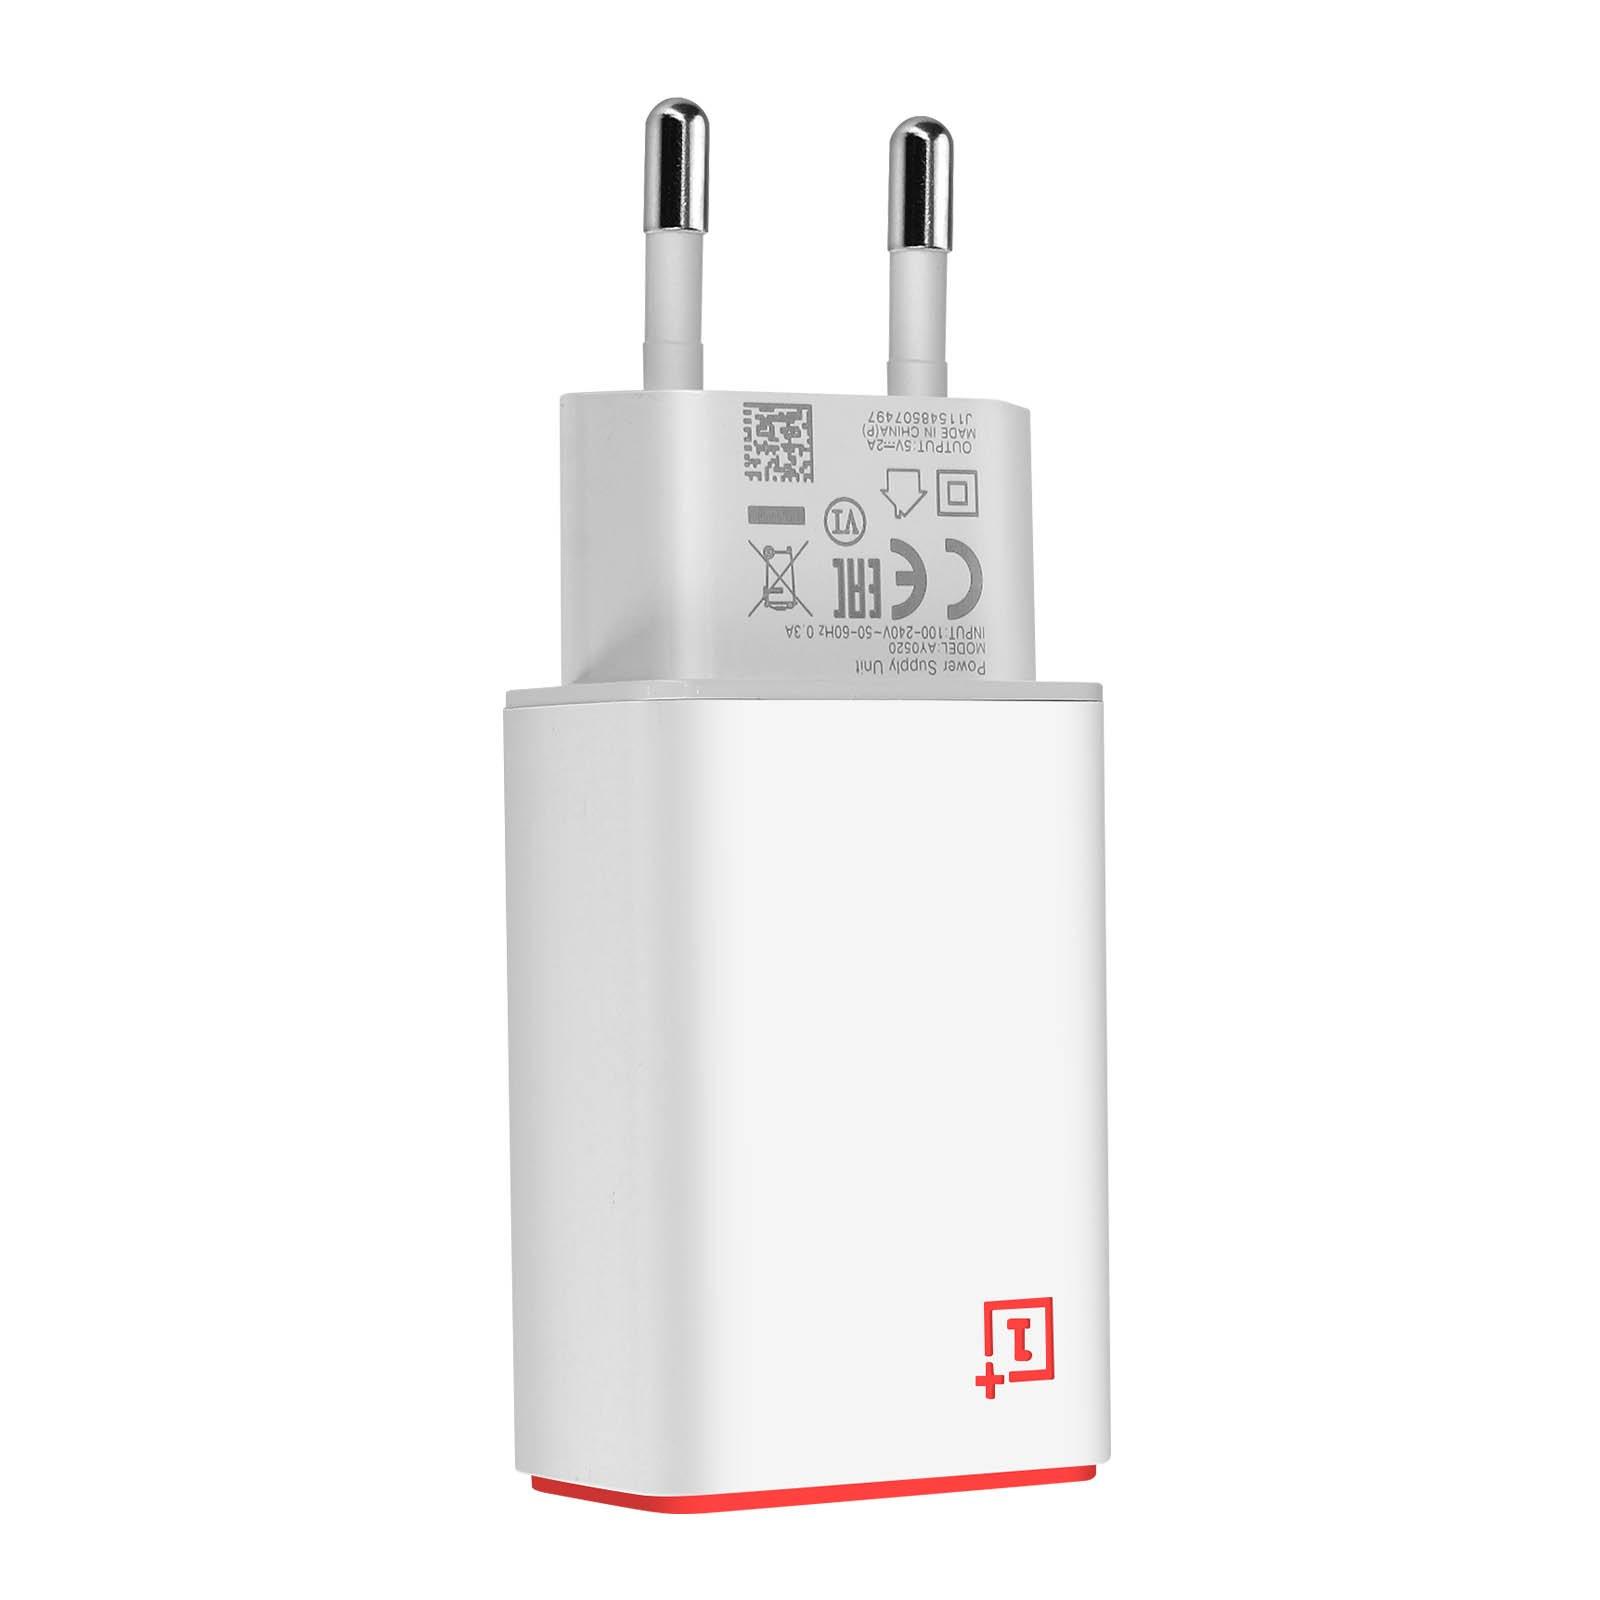 OnePlus  Caricabatterie OnePlus USB 10W, bianco 